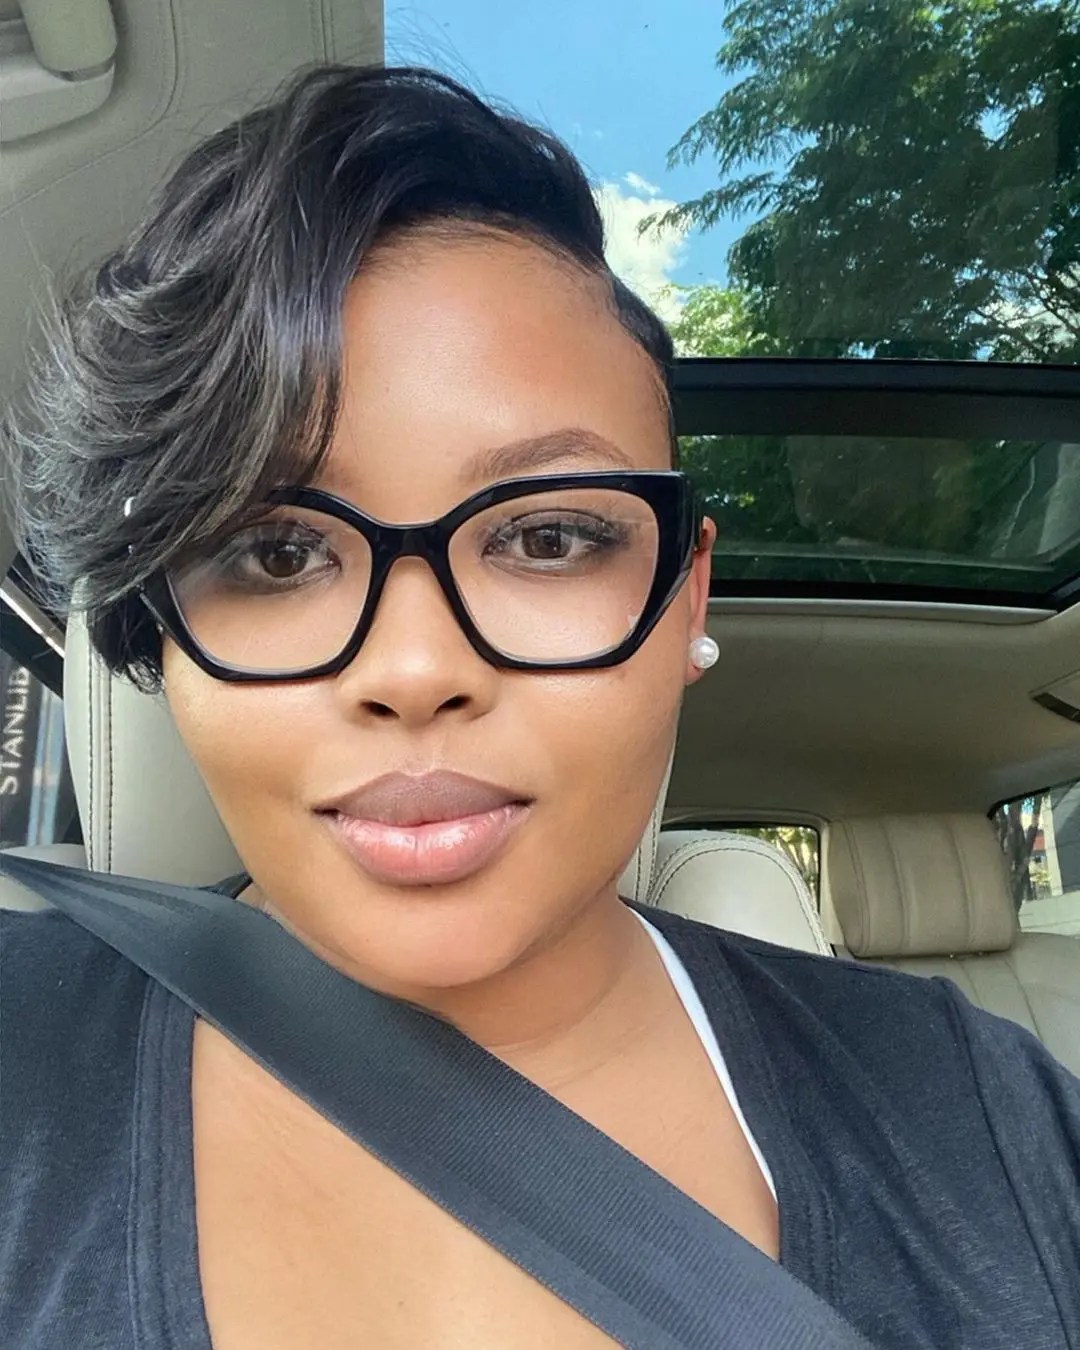 Anele Mdoda flaunts new hairstyle – Photos